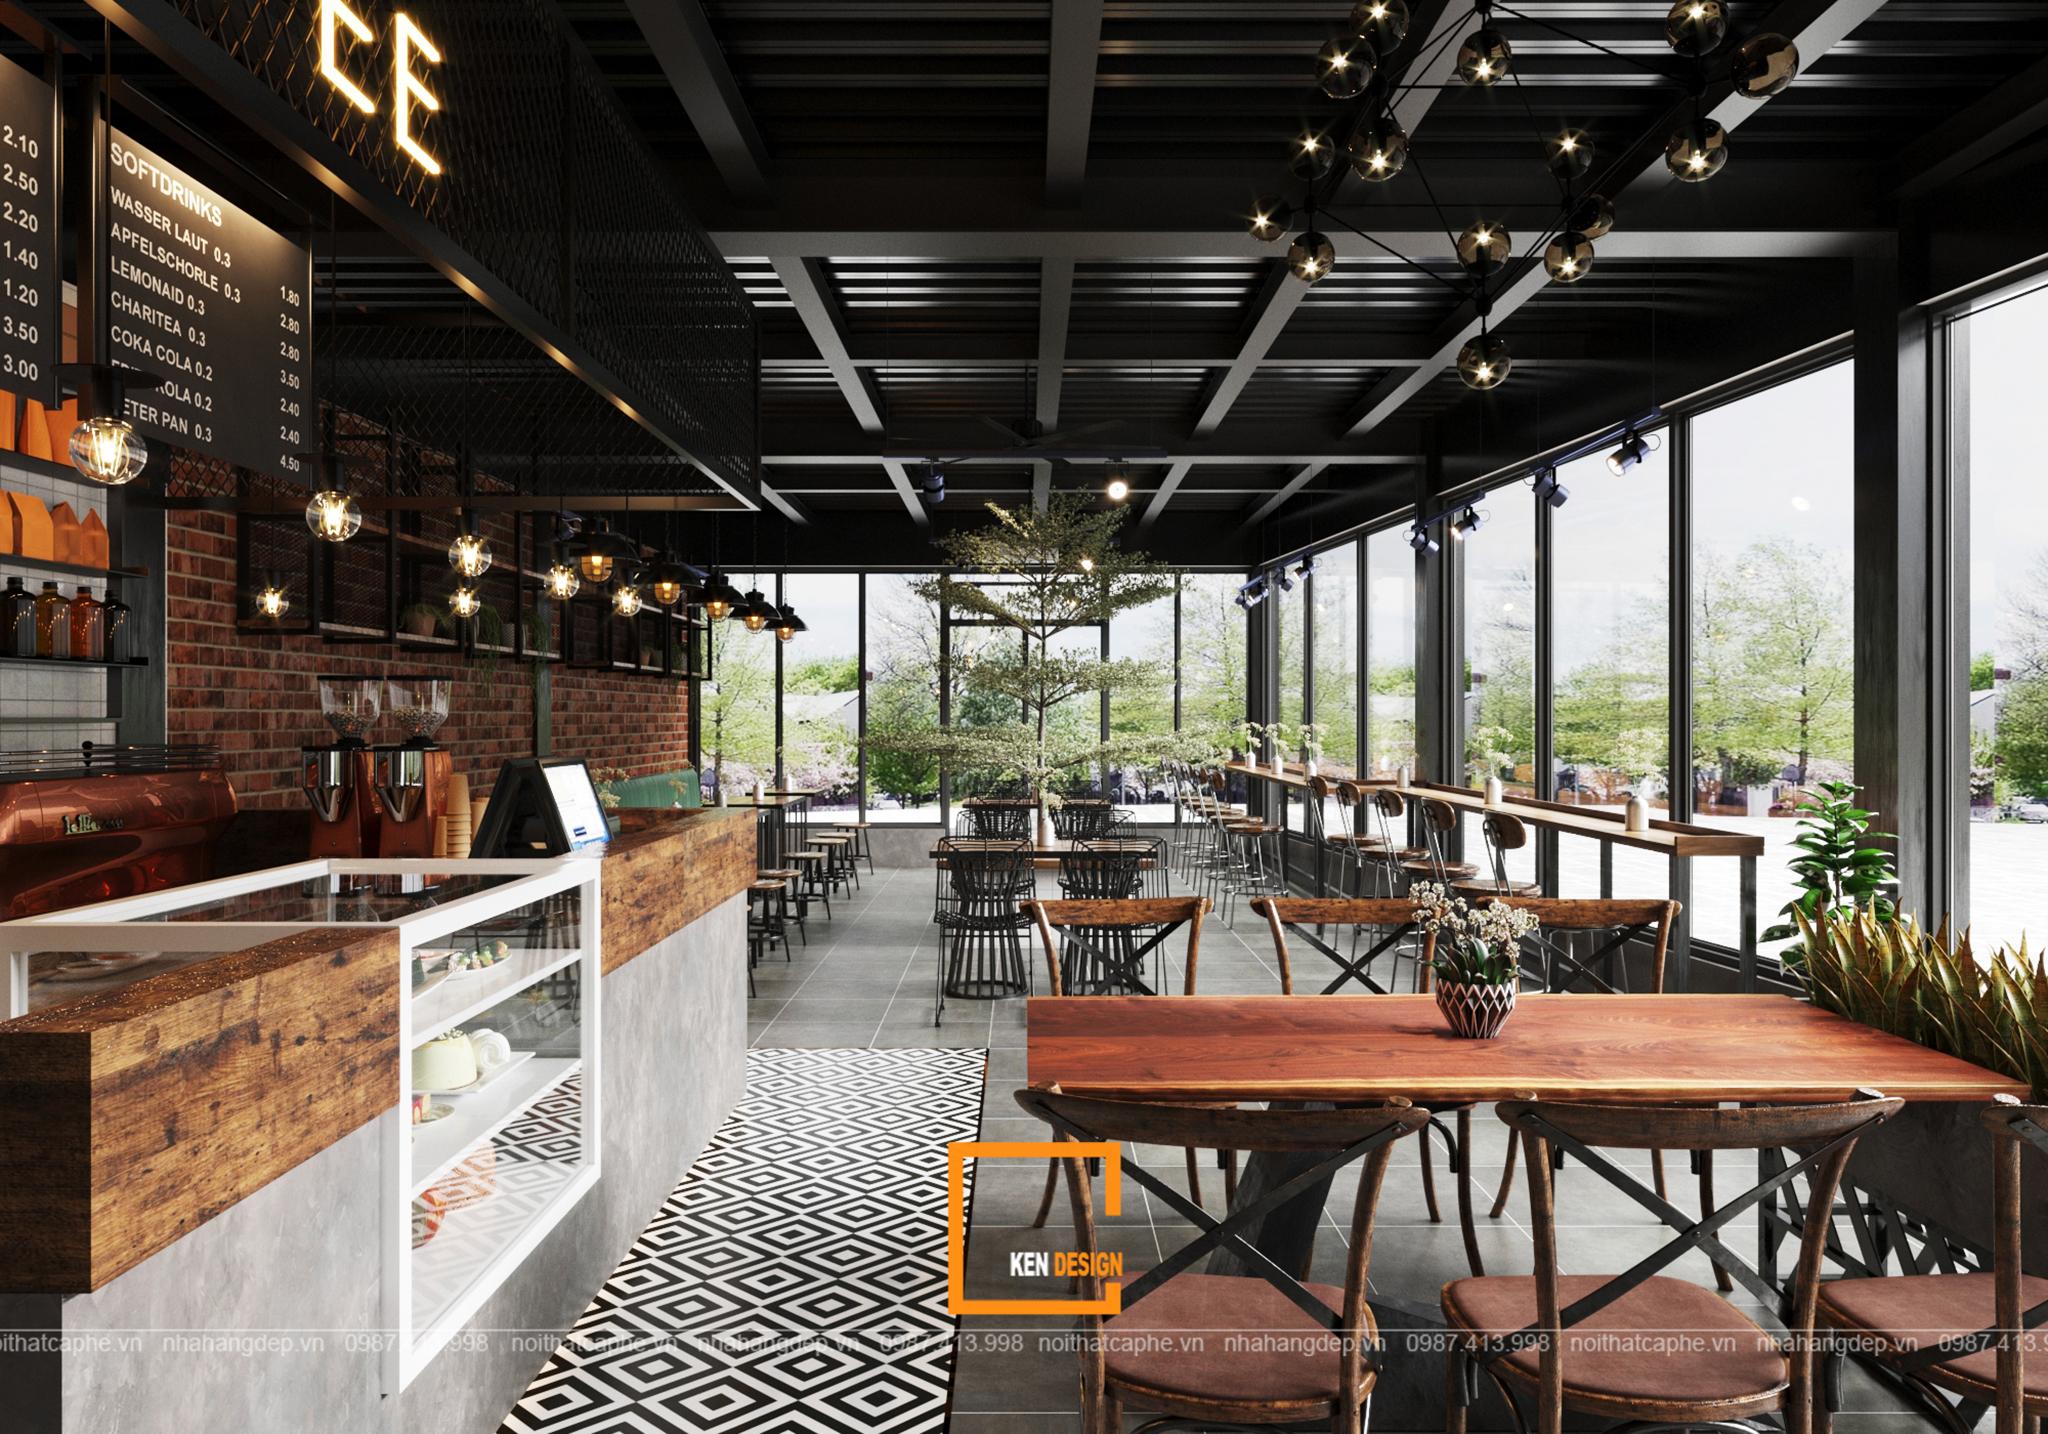 Cùng khám phá thiết kế nội thất đẹp mắt tại quán cafe Urban Coffee tại Nghệ An. Từng chi tiết được chăm chút cẩn thận, sự kết hợp tinh tế giữa màu sắc và đồ nội thất đẳng cấp. Hãy cùng đắm chìm trong không gian xanh tươi như mơ và thưởng thức những ly cà phê thơm ngon nhé!